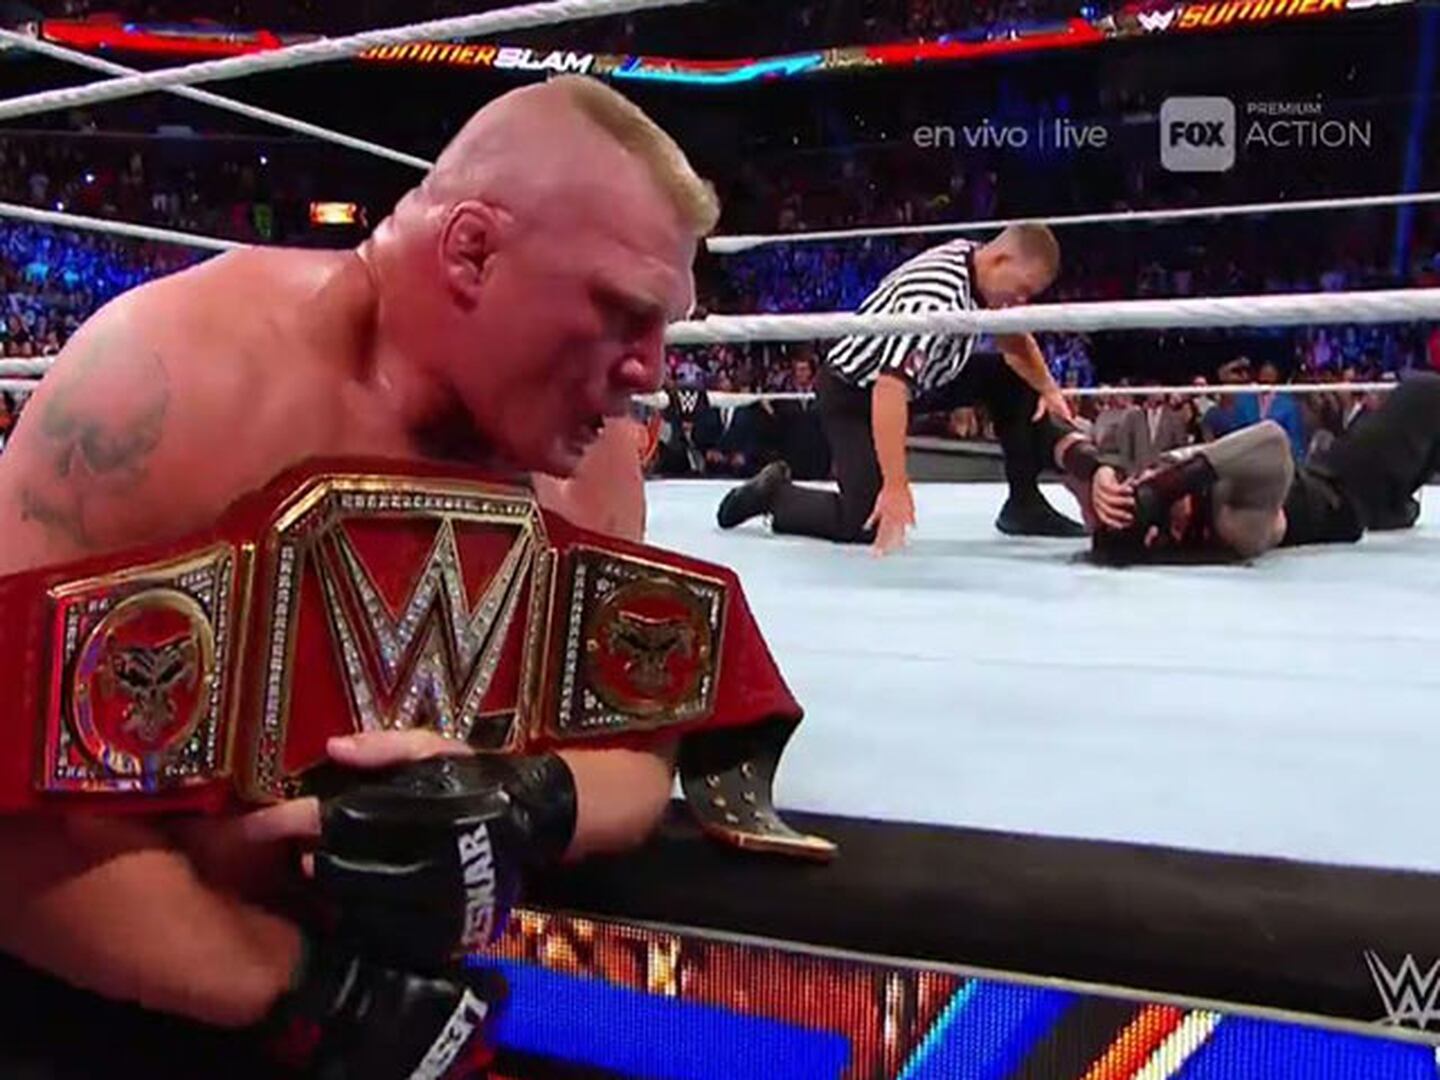 Habrá Brock Lesnar por más tiempo en WWE después de Summerslam